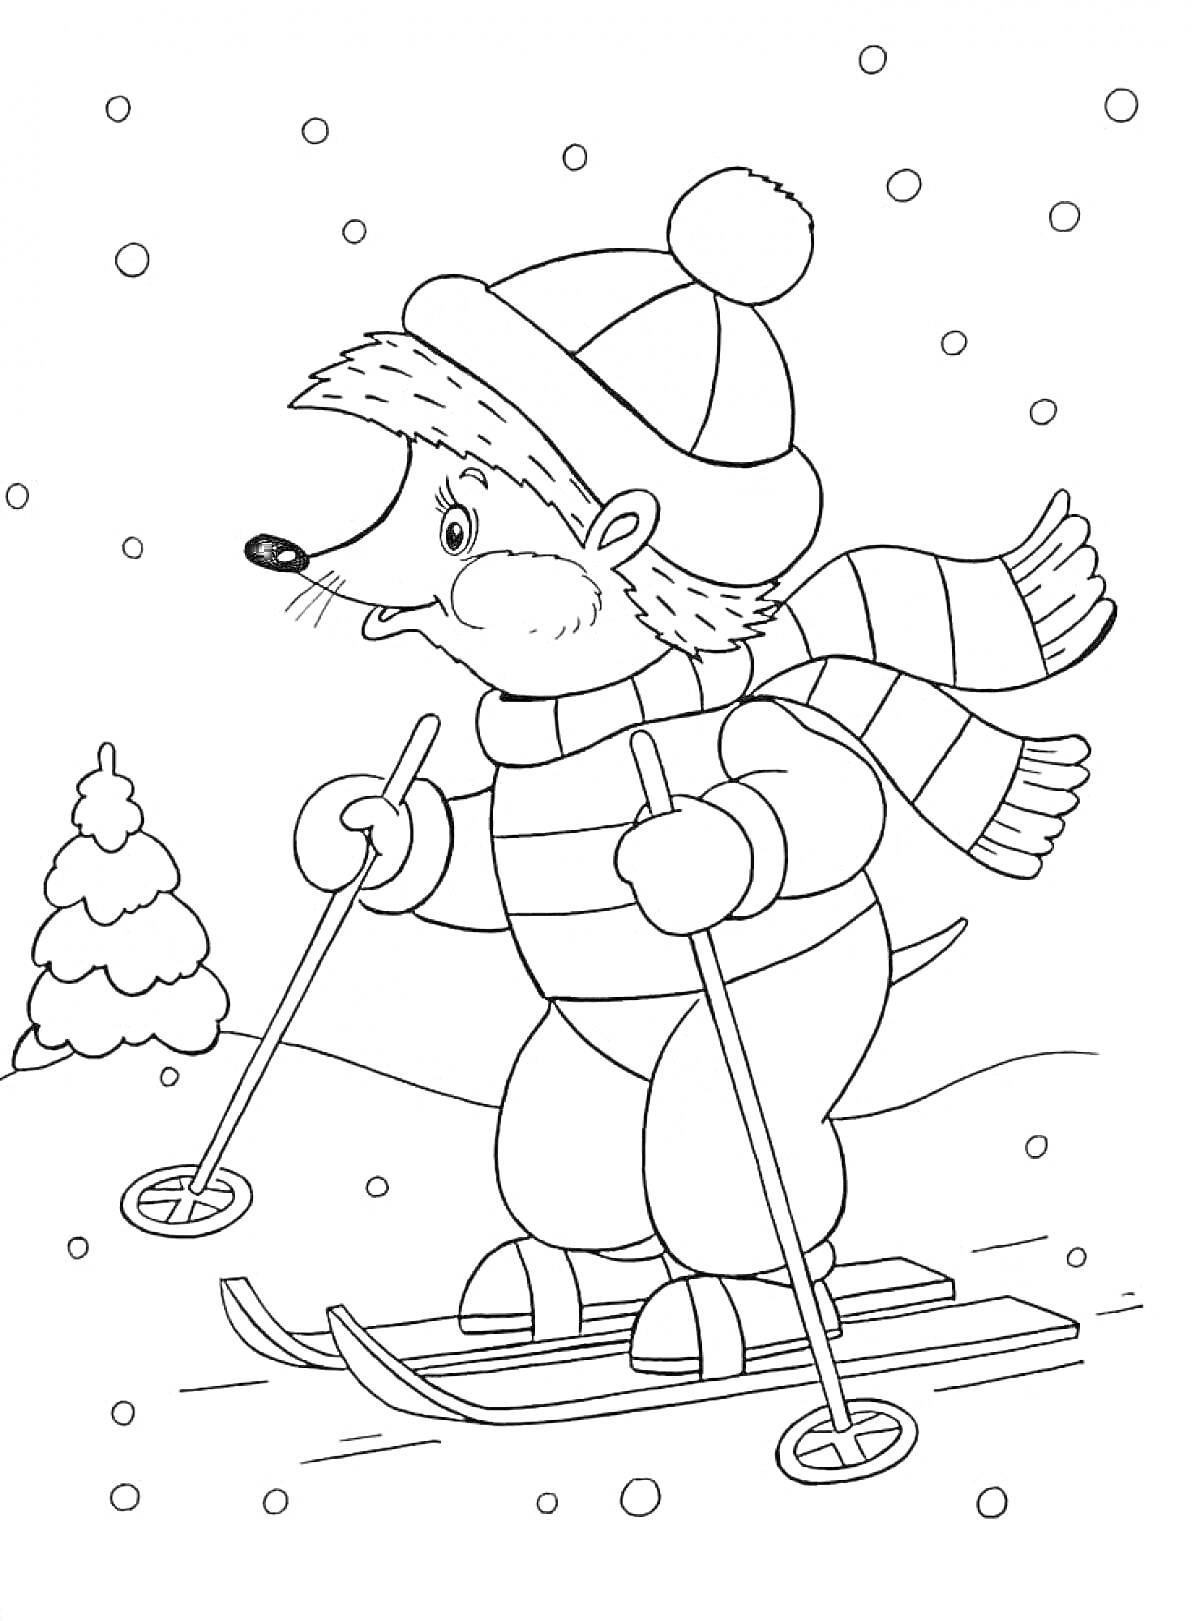 Раскраска Лыжник-еж зимой в шапке с помпоном и шарфе, едет на лыжах по снегу рядом с ёлкой